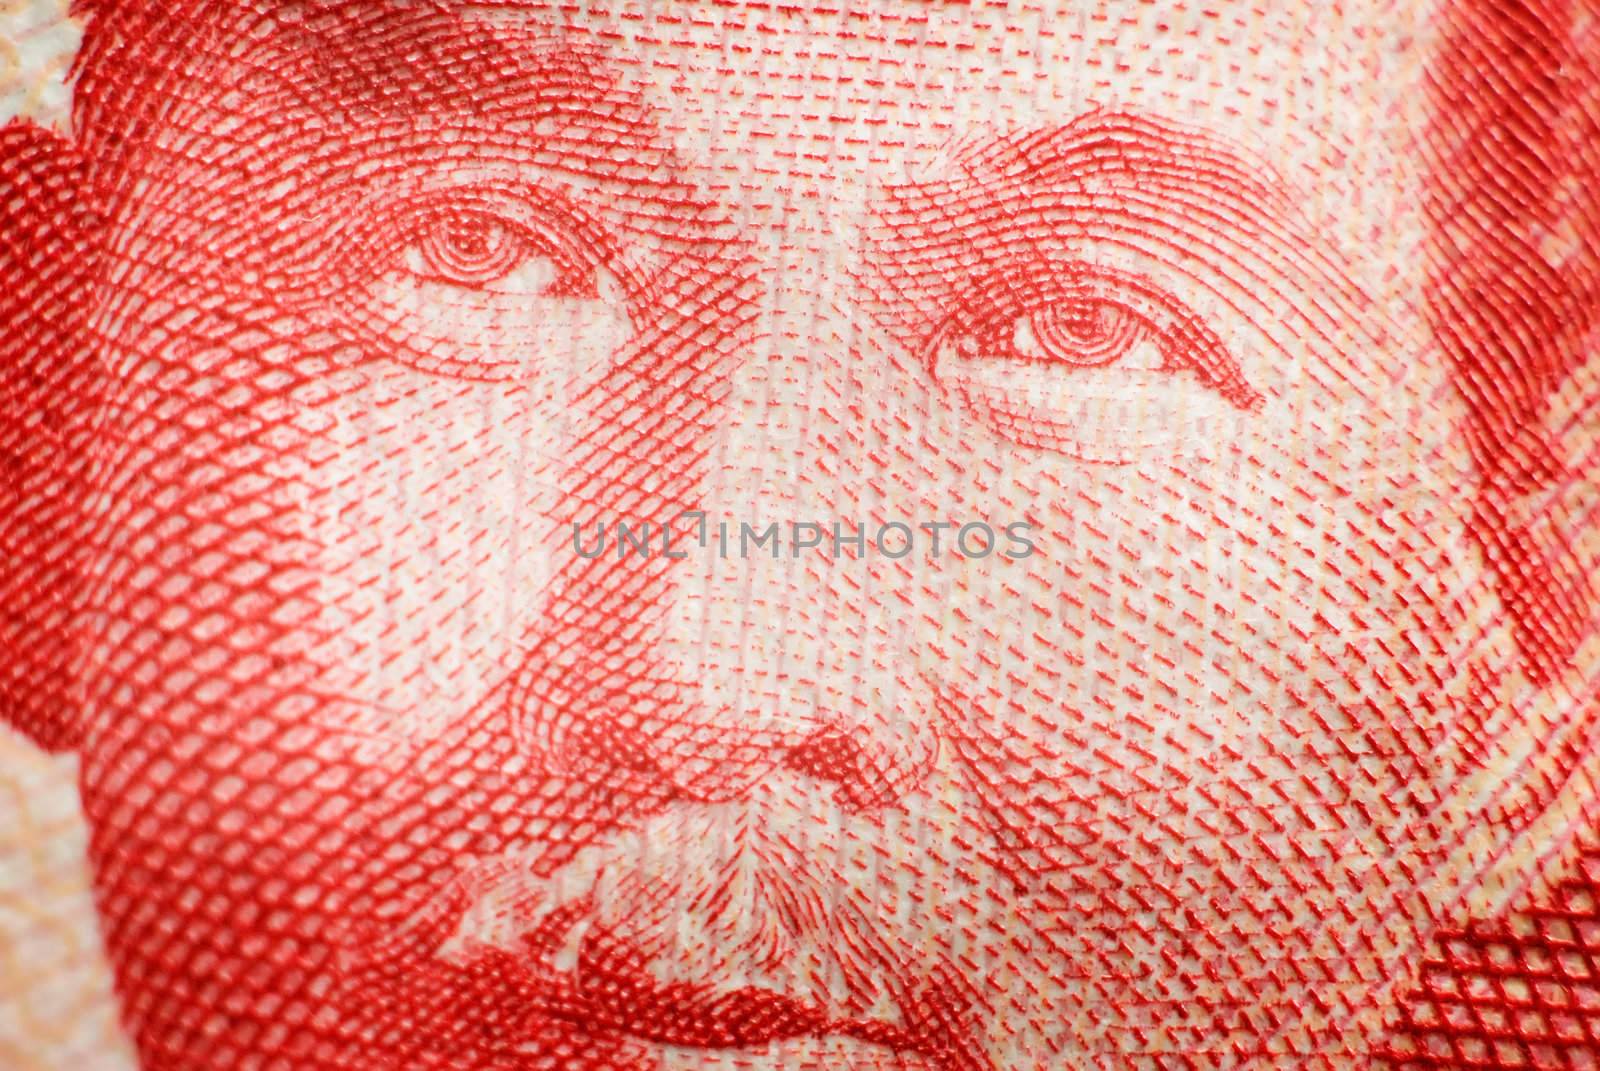 Asia money portrait.